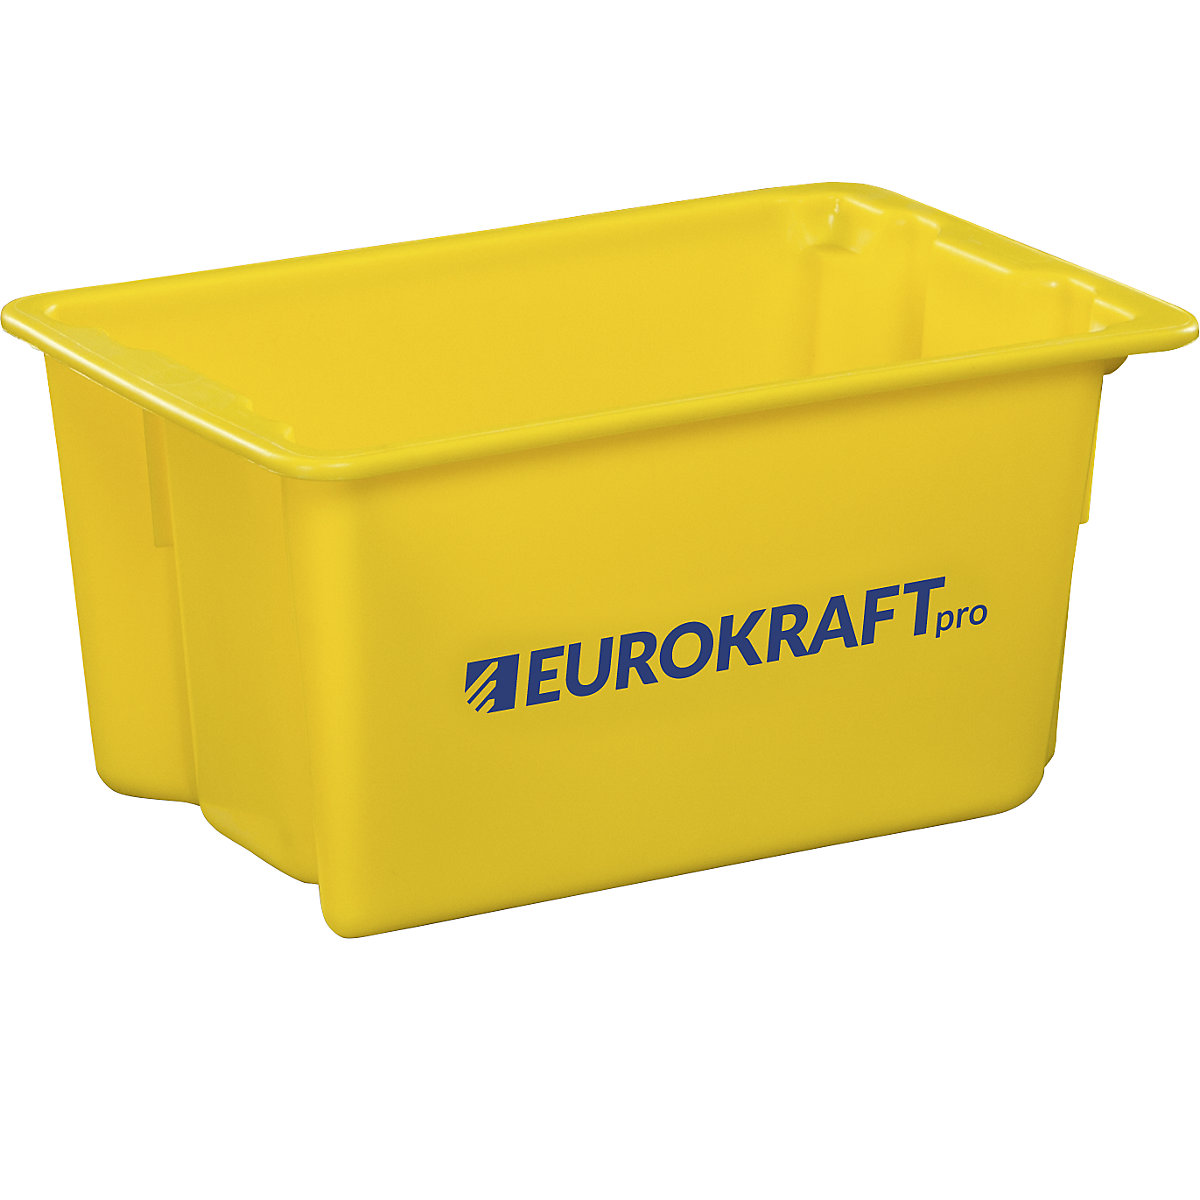 EUROKRAFTpro – Otočná stohovací nádoba z polypropylenu vhodného pro potraviny, obsah 50 litrů, bal.j. 3 ks, stěny a dno plné, žlutá